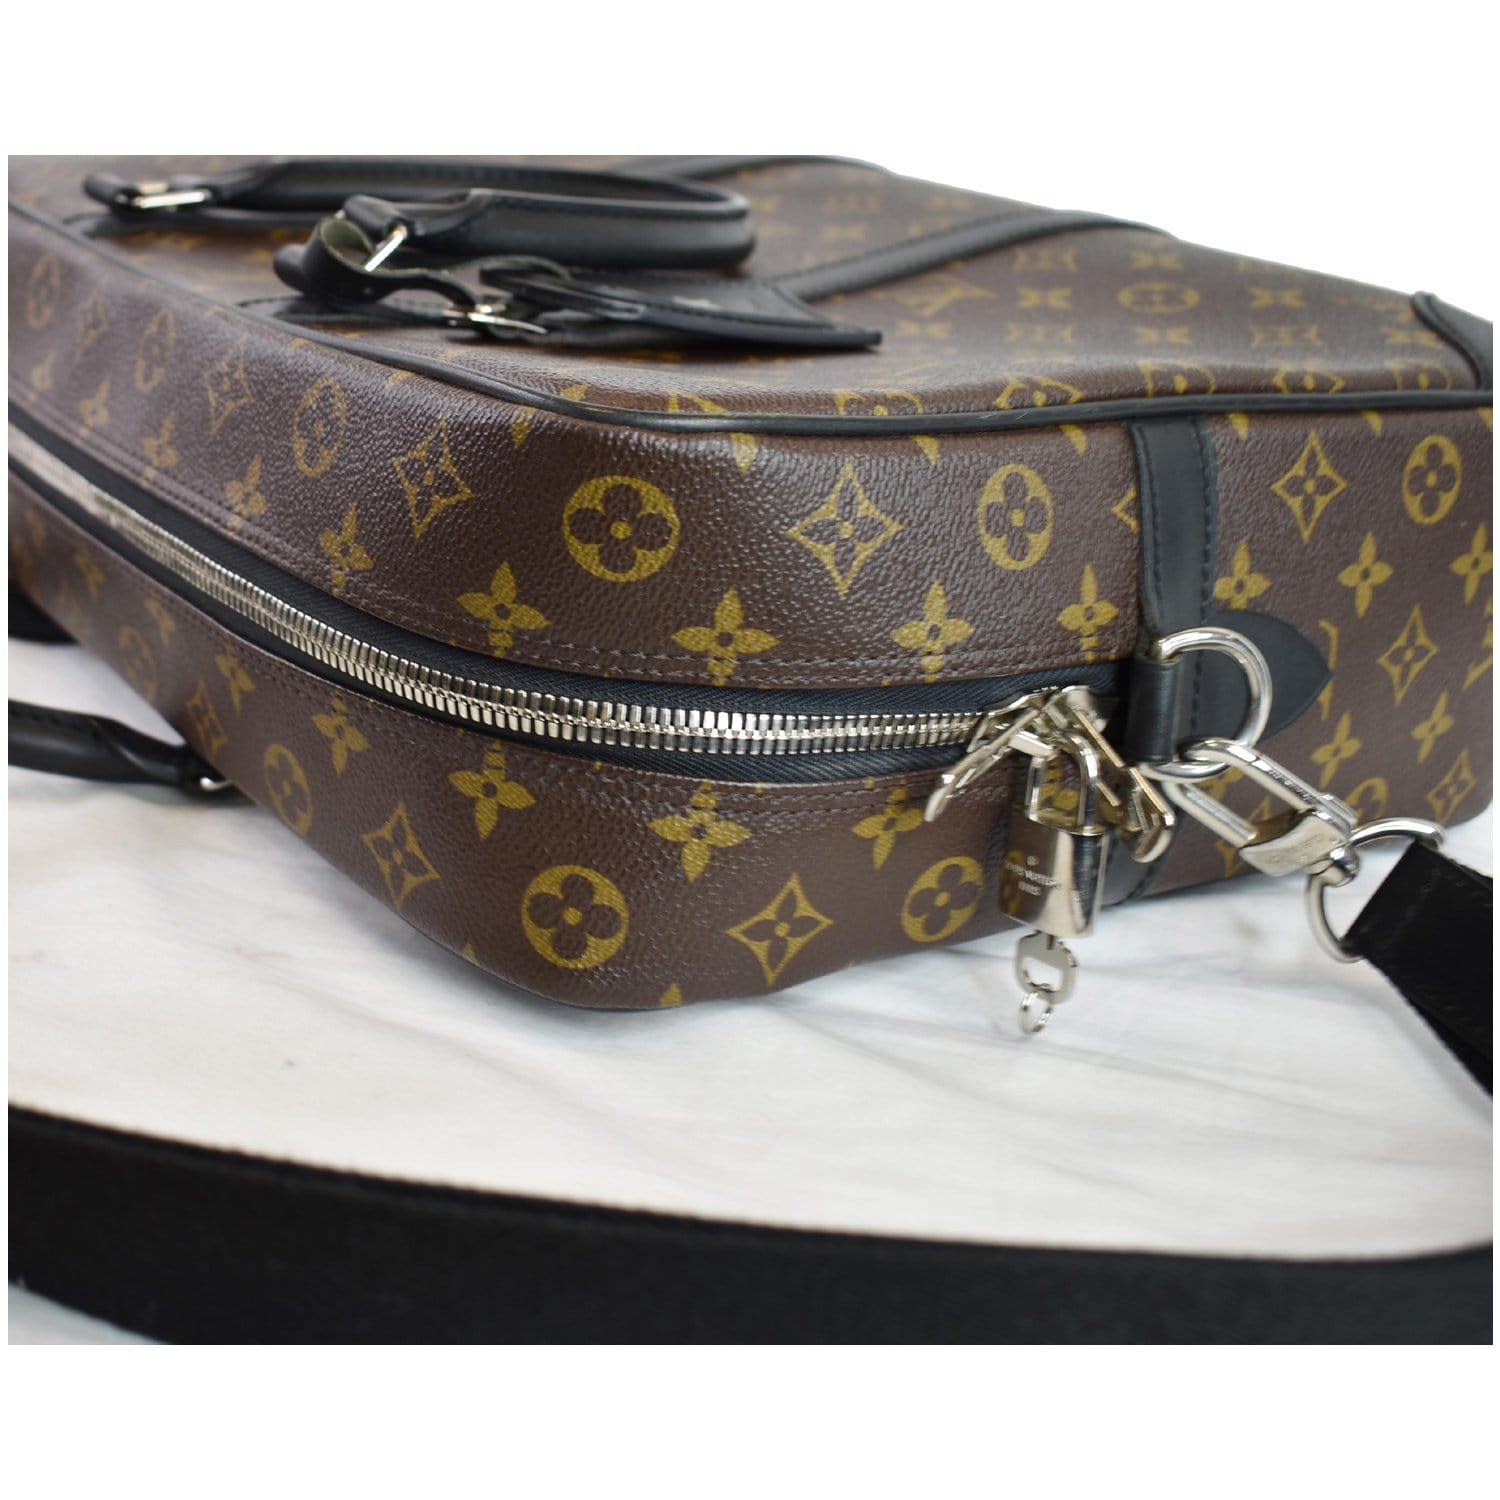 Porte documents jour cloth satchel Louis Vuitton Brown in Cloth - 31238205